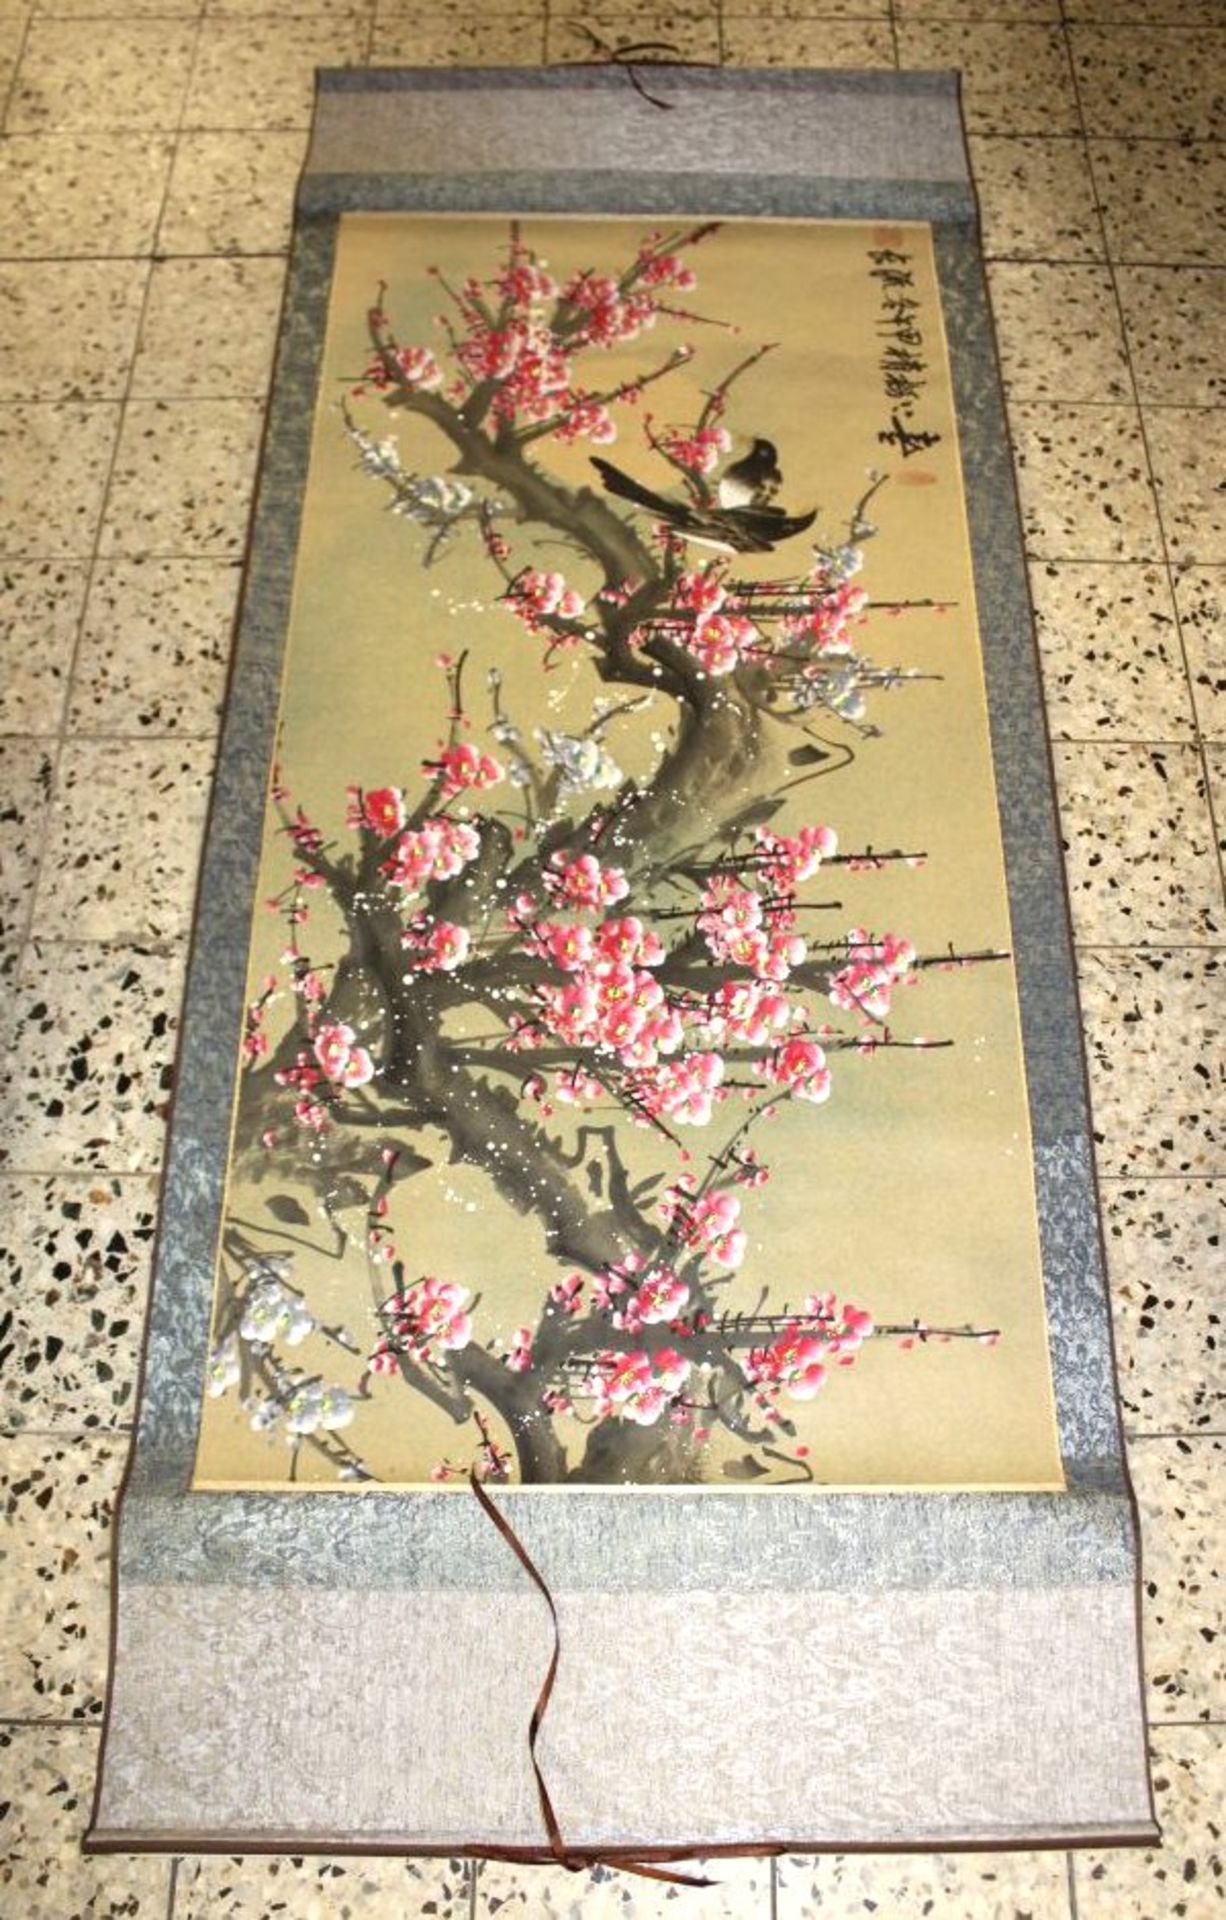 gr. Rollbild, China, Kirschblüten und Vögel, 180 x 73cm- - -22.61 % buyer's premium on the hammer